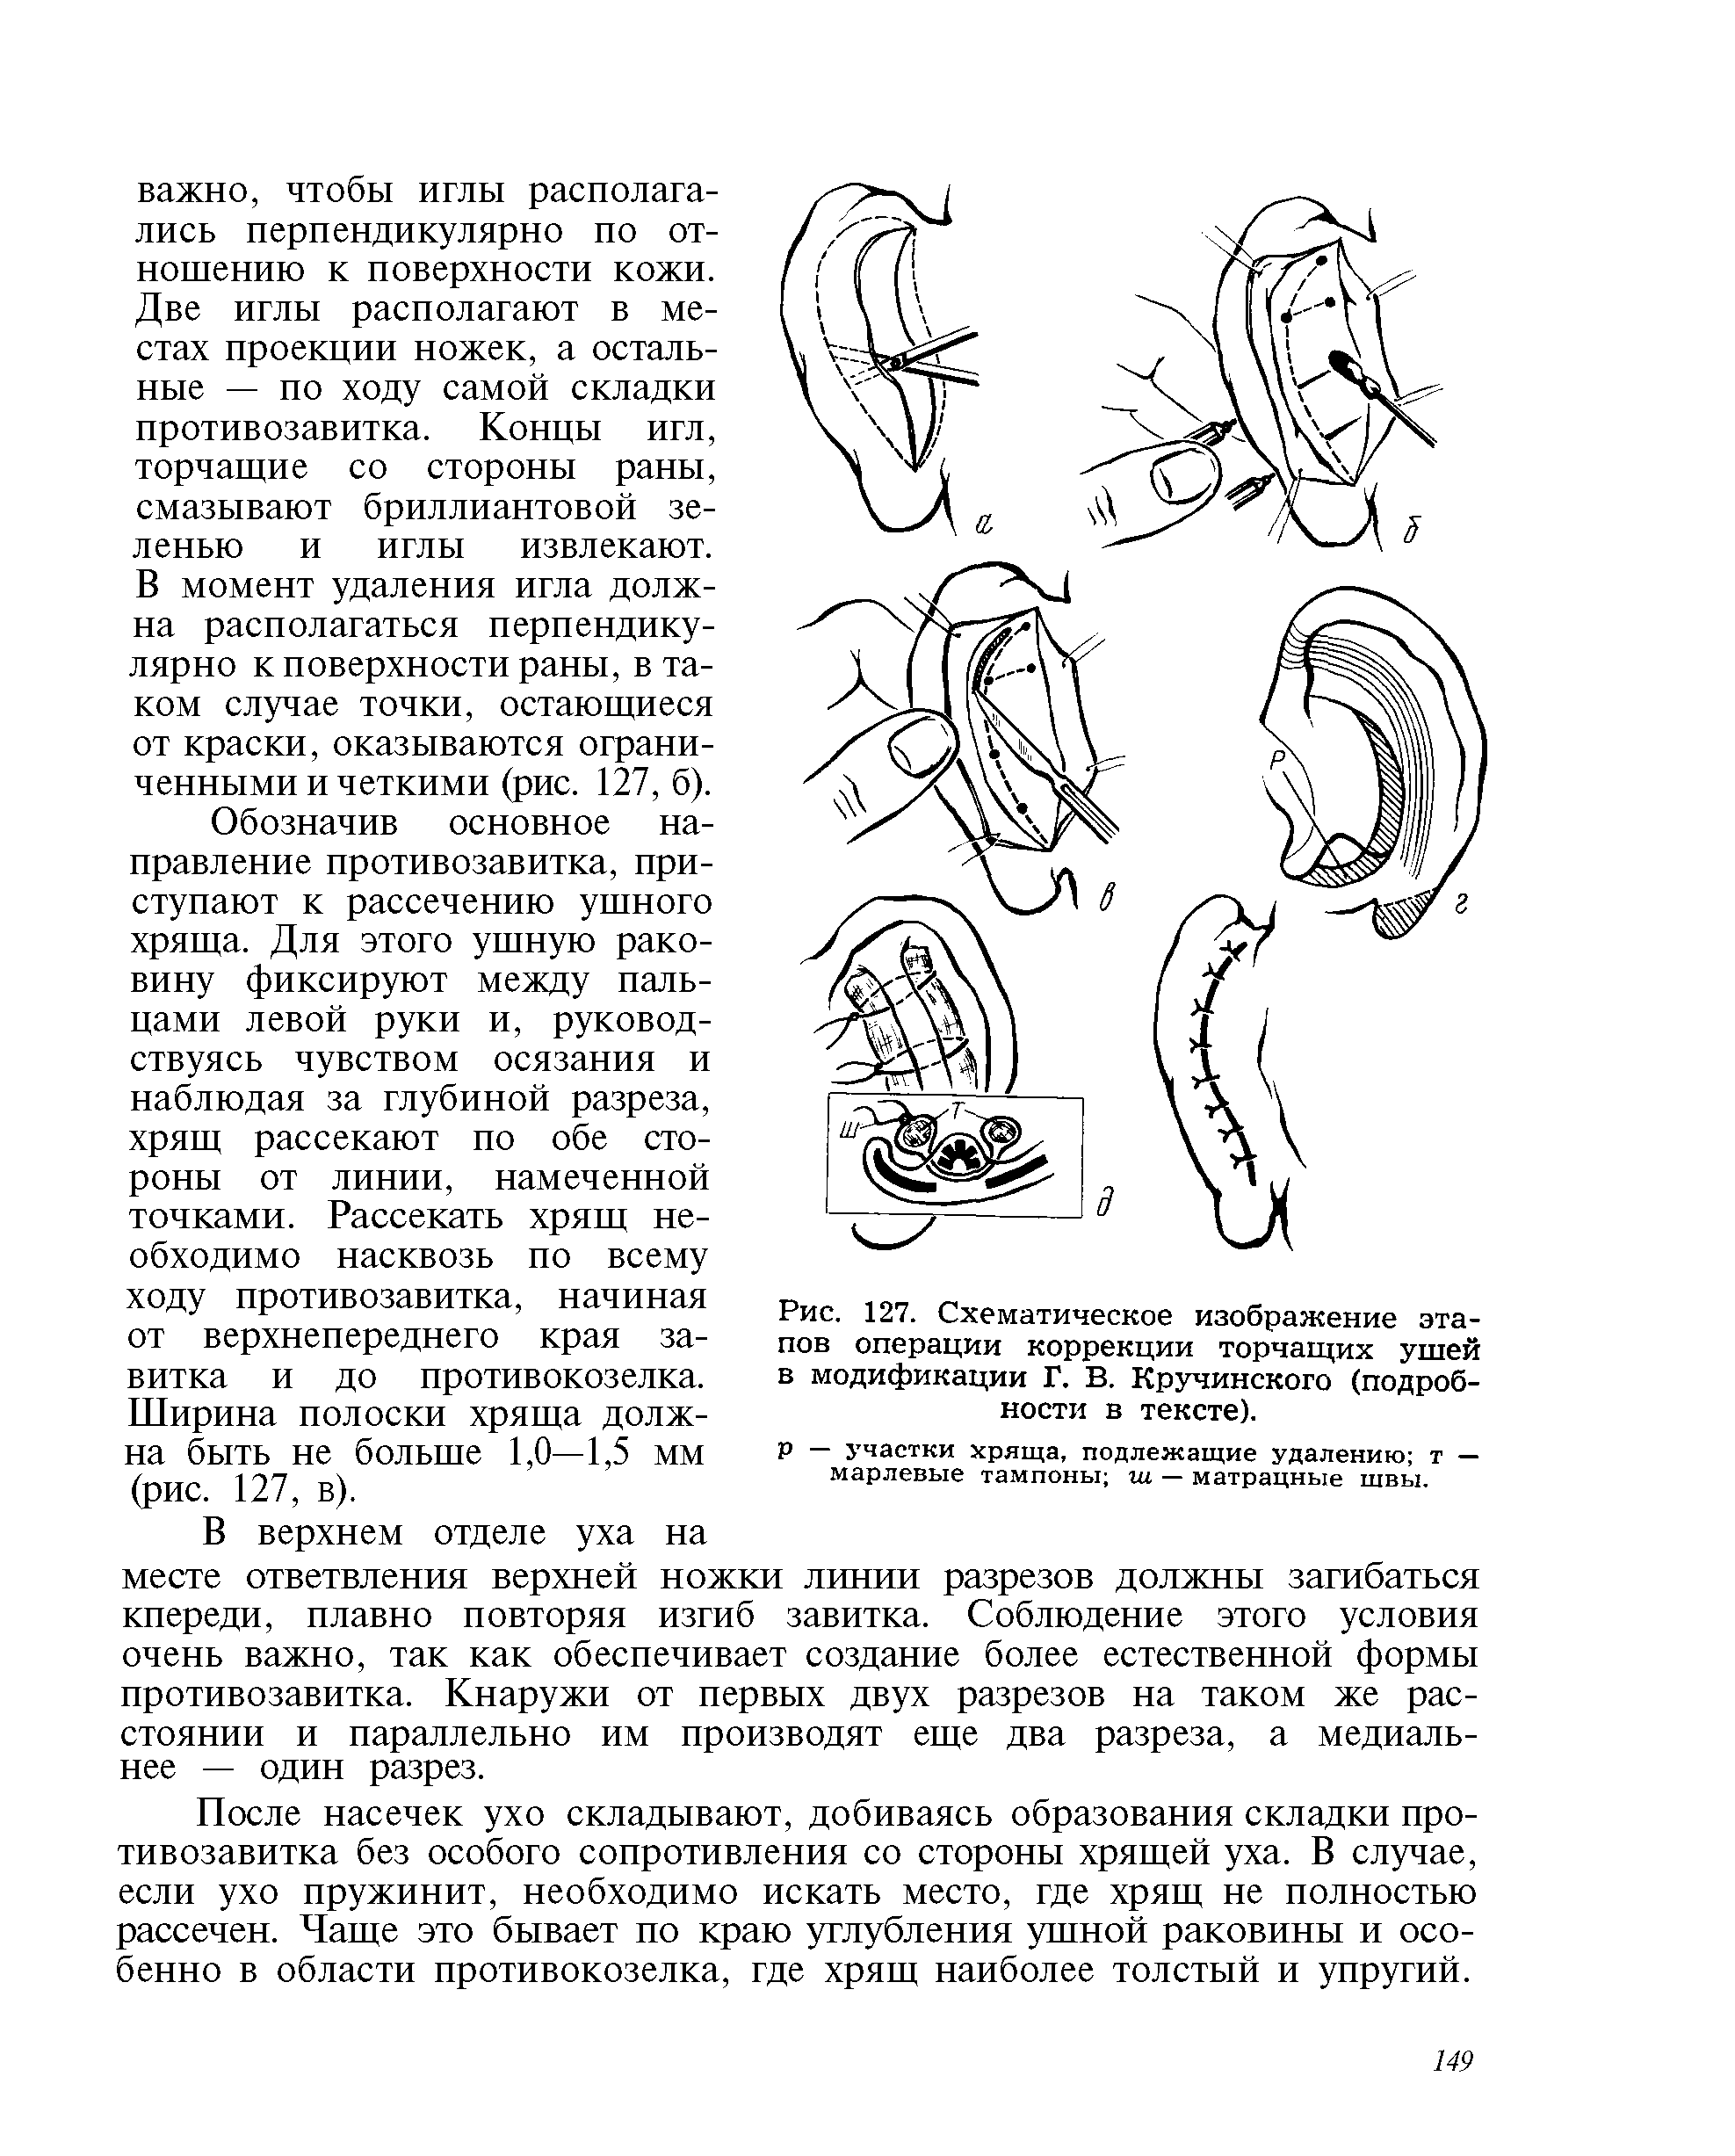 Рис. 127. Схематическое изображение этапов операции коррекции торчащих ушей в модификации Г. В. Кручинского (подробности в тексте).